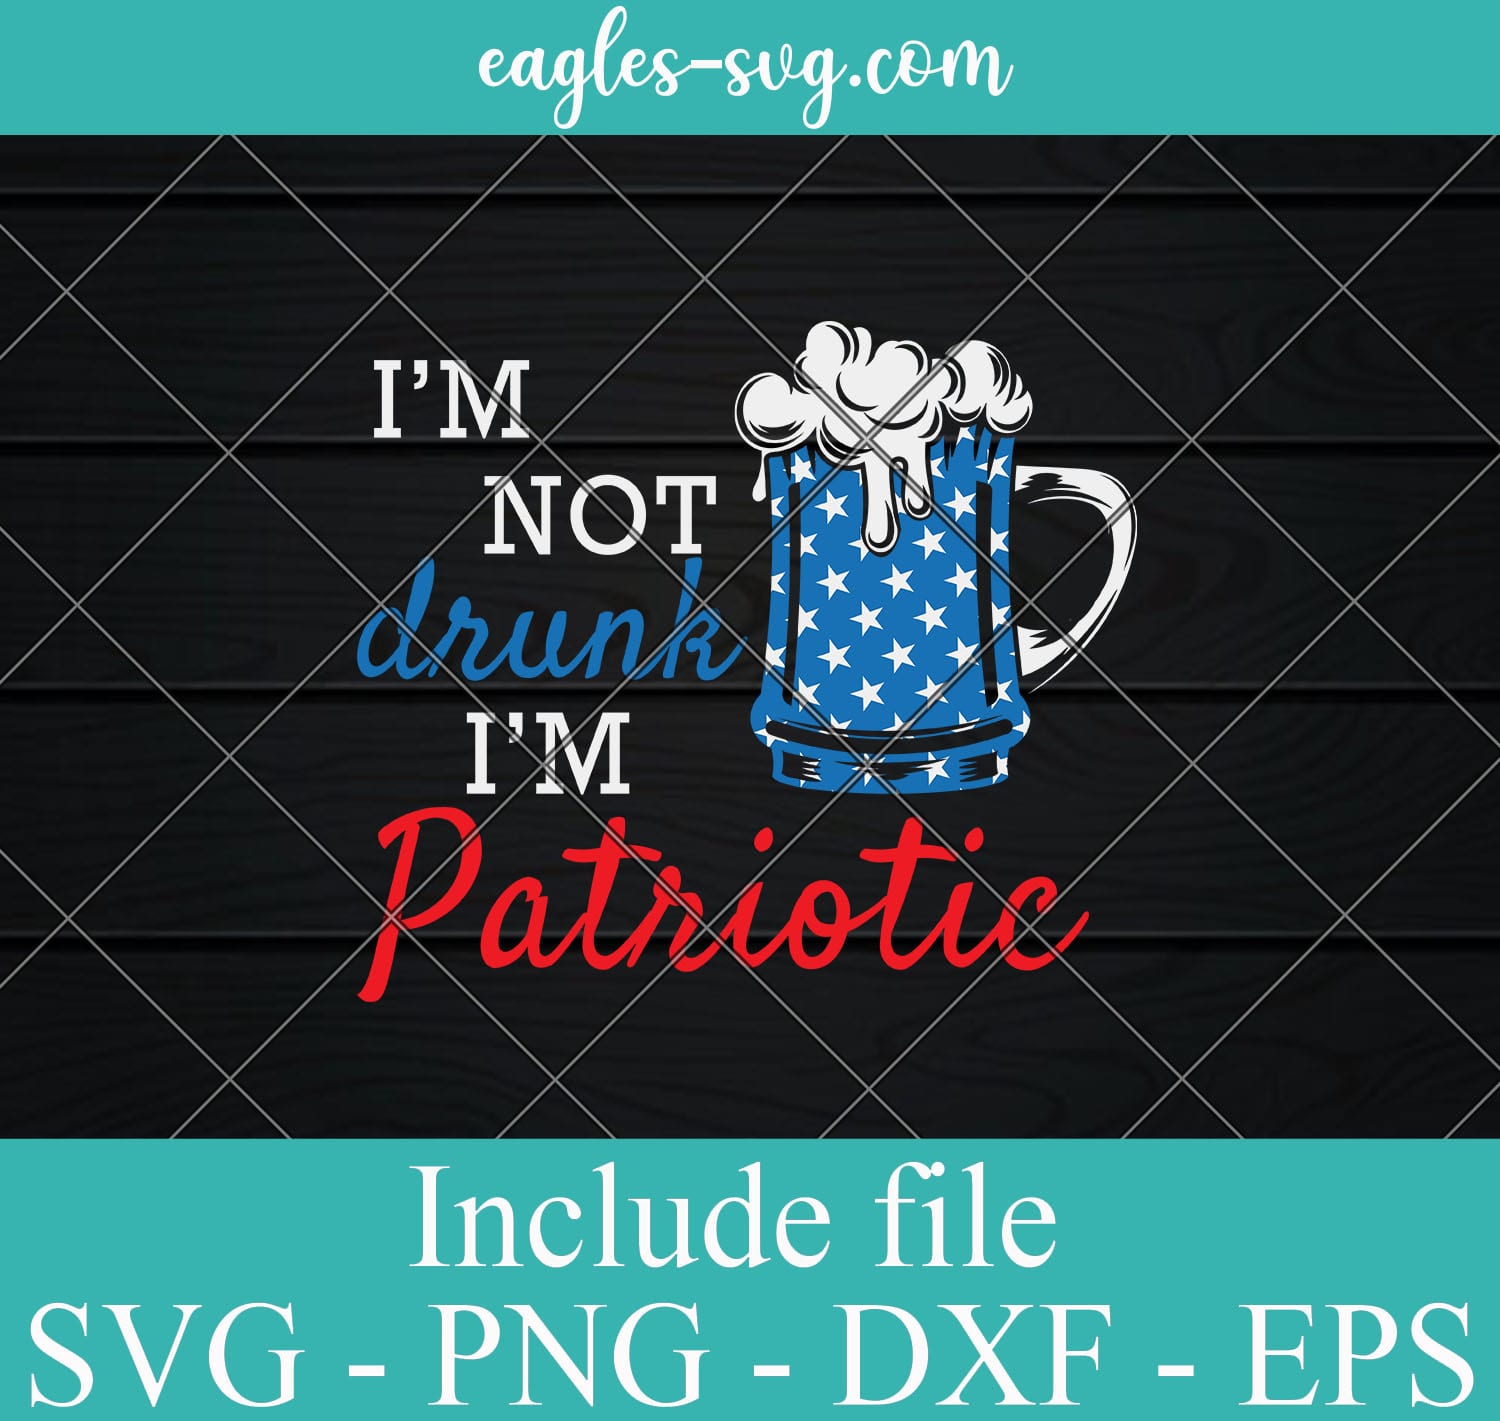 I'm not drunk I'm Patriotic Svg, 4th of july Svg Download